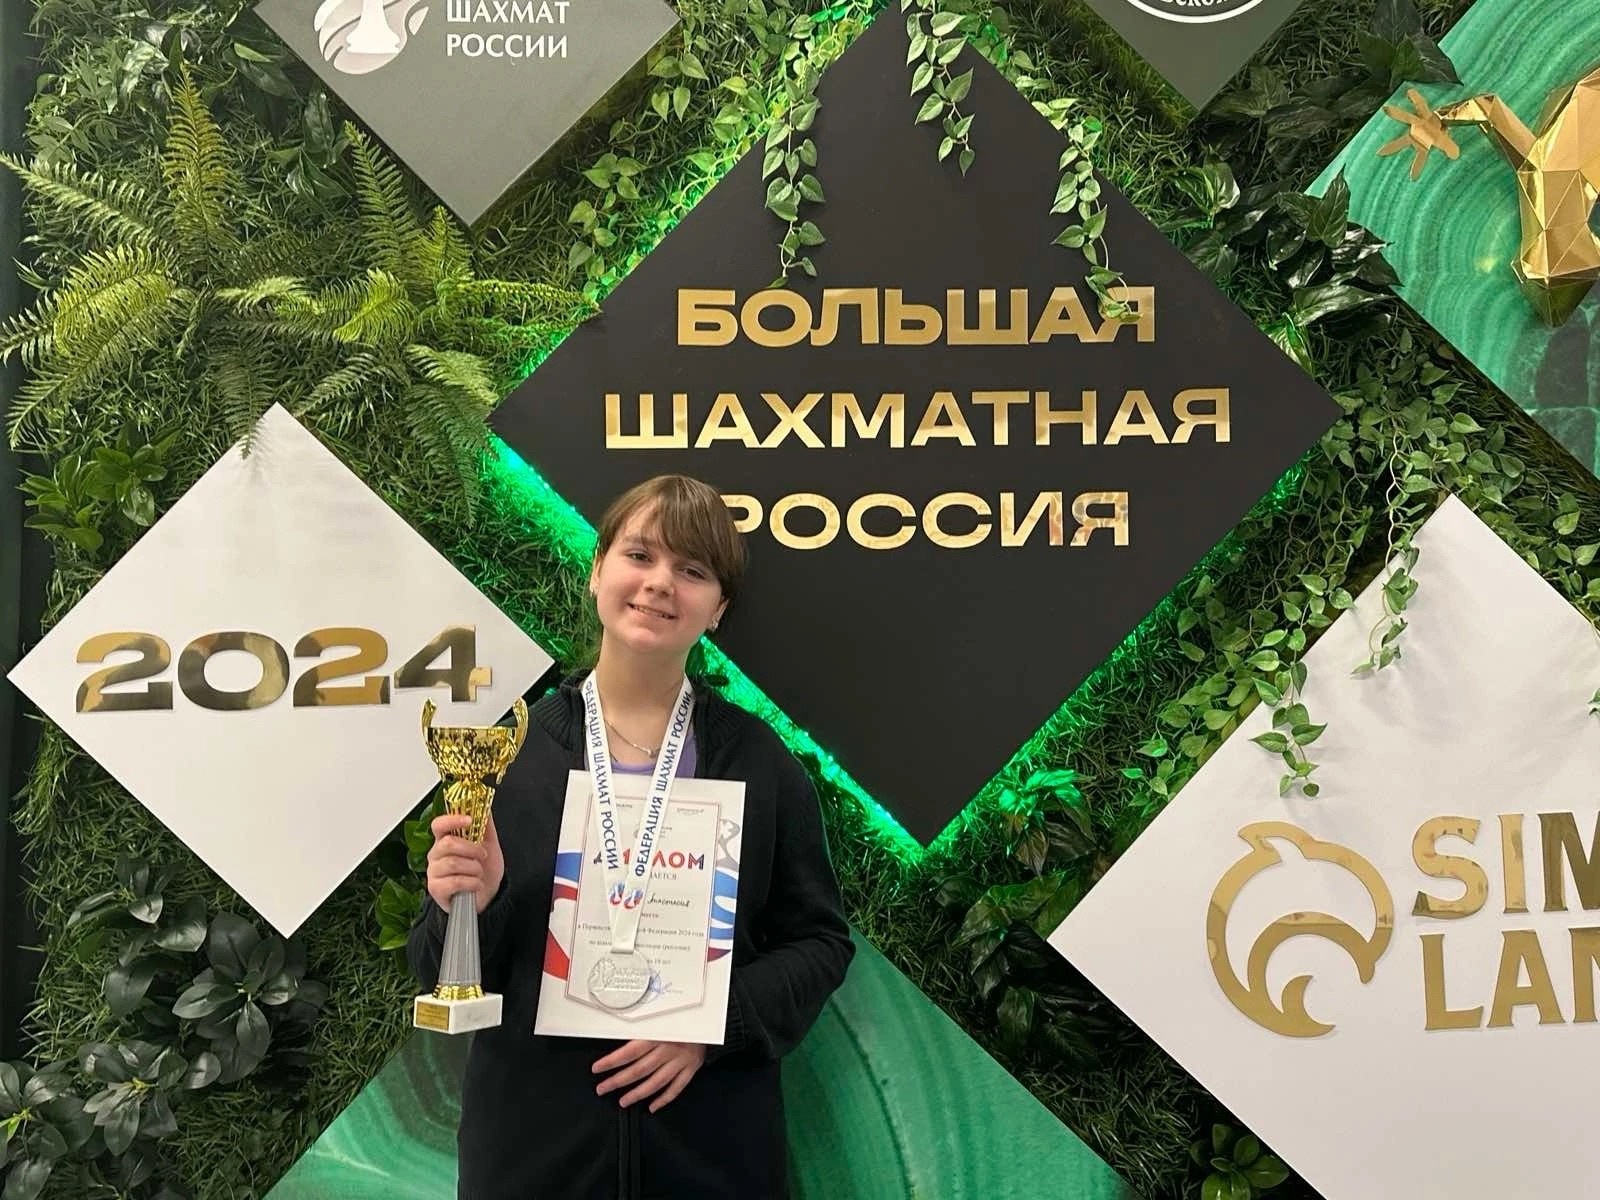 Настя Чекина, ученица 8 «Б» класса,  завоевала серебряную медаль на Первенстве России по шахматной композиции среди девушек до 19 лет.